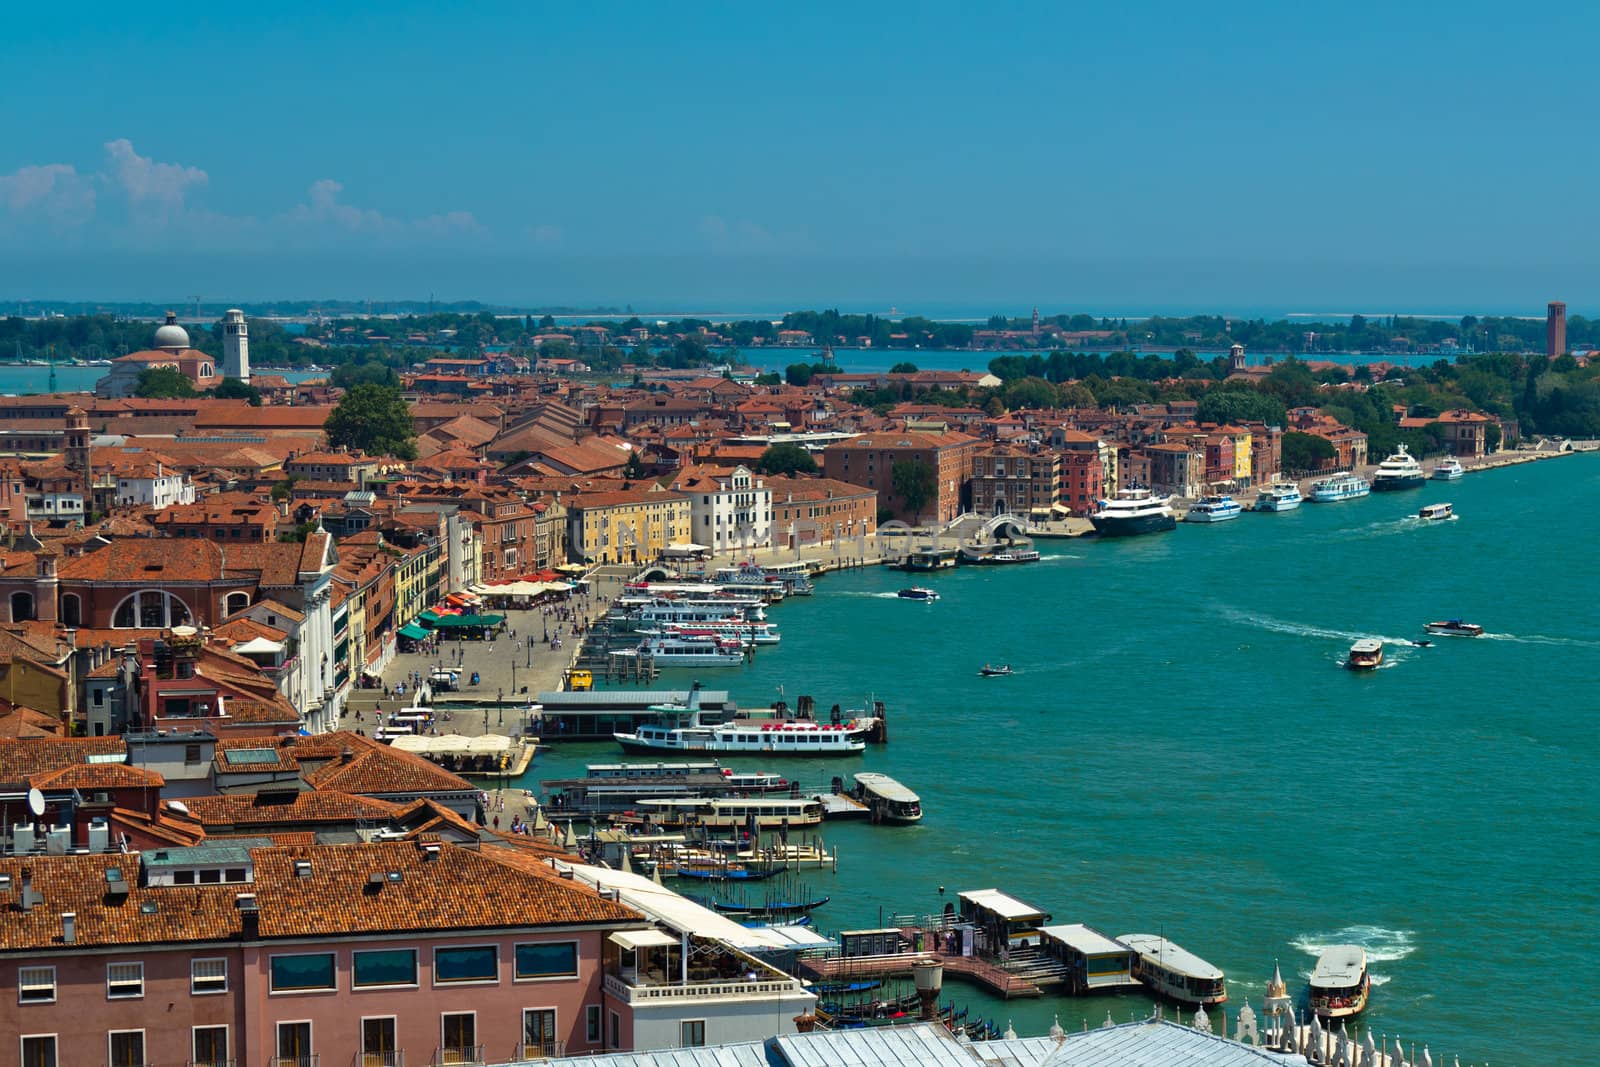 Venice roofs and harbor by dmitryelagin